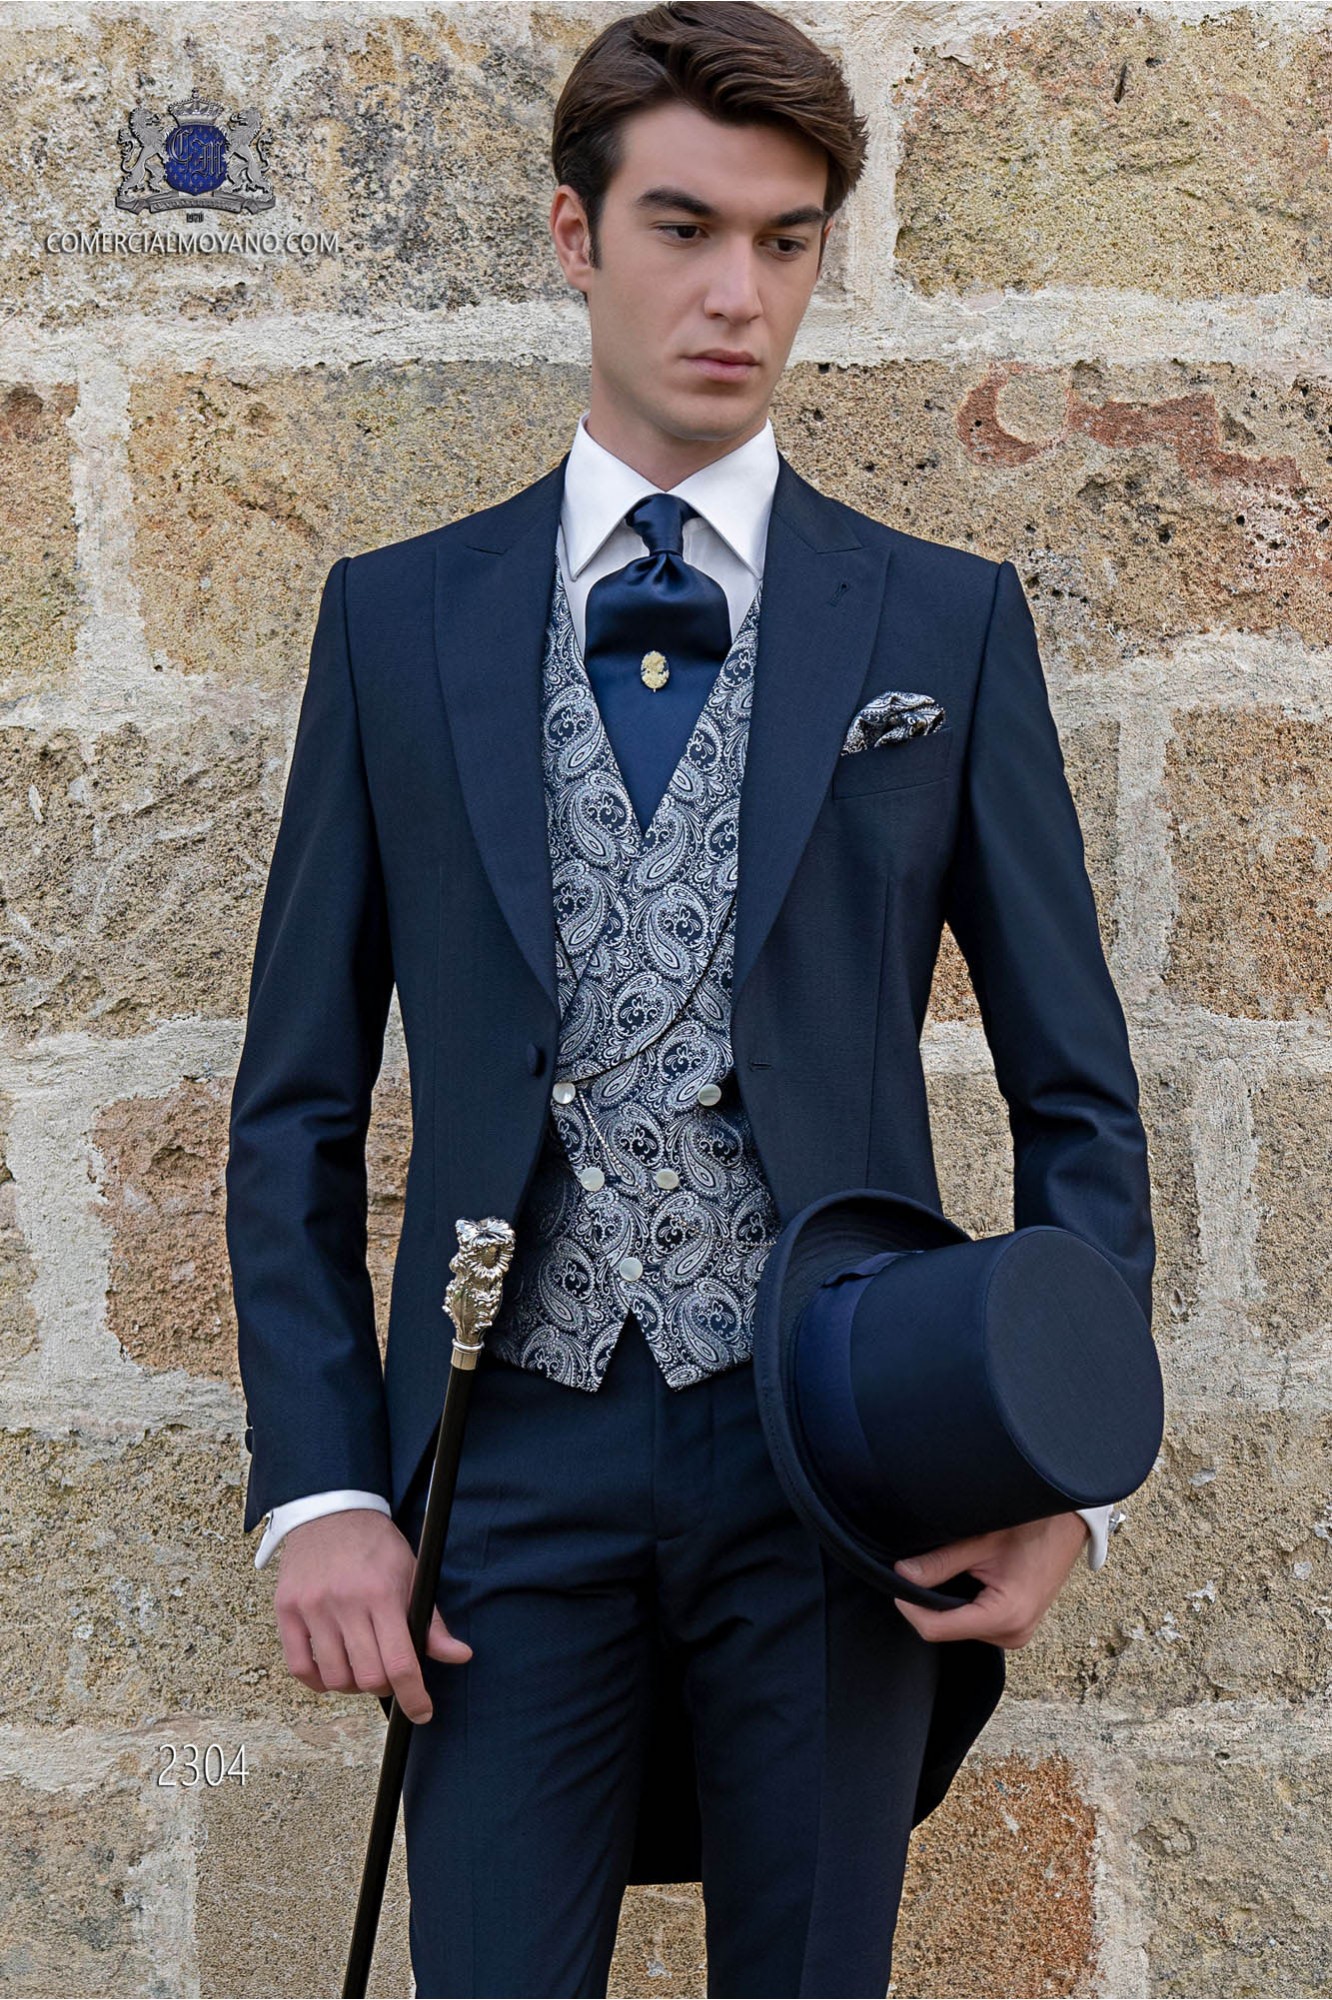 Chaqué italiano azul lana mohair modelo: 2304 Mario Moyano colección Gentleman